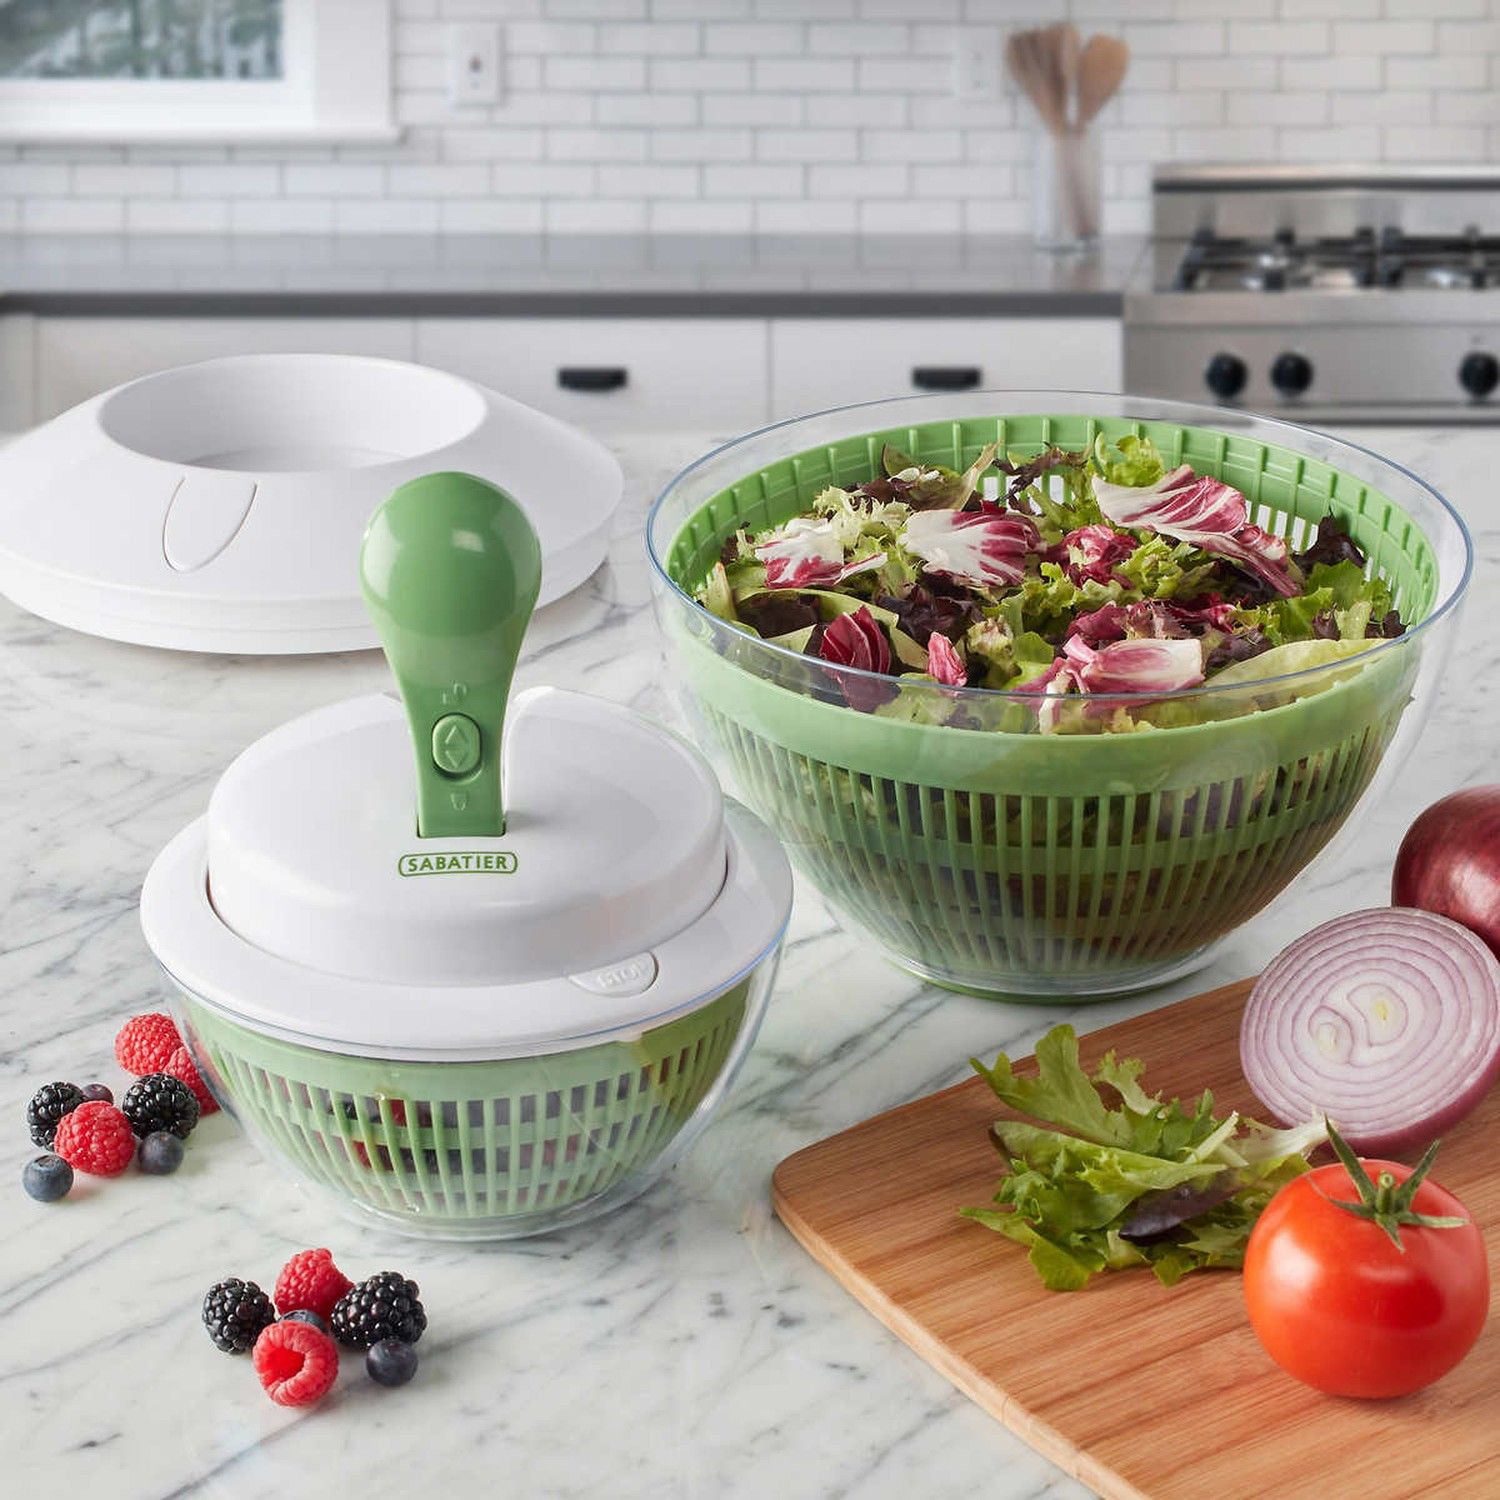 Salad Spinner Large 6.3 Qt, Manual Lettuce Spinner for Vegetable Prepping,  One-Handed Pump Fruit Spinner Dryer with Bowl and Colander, Dishwasher Safe